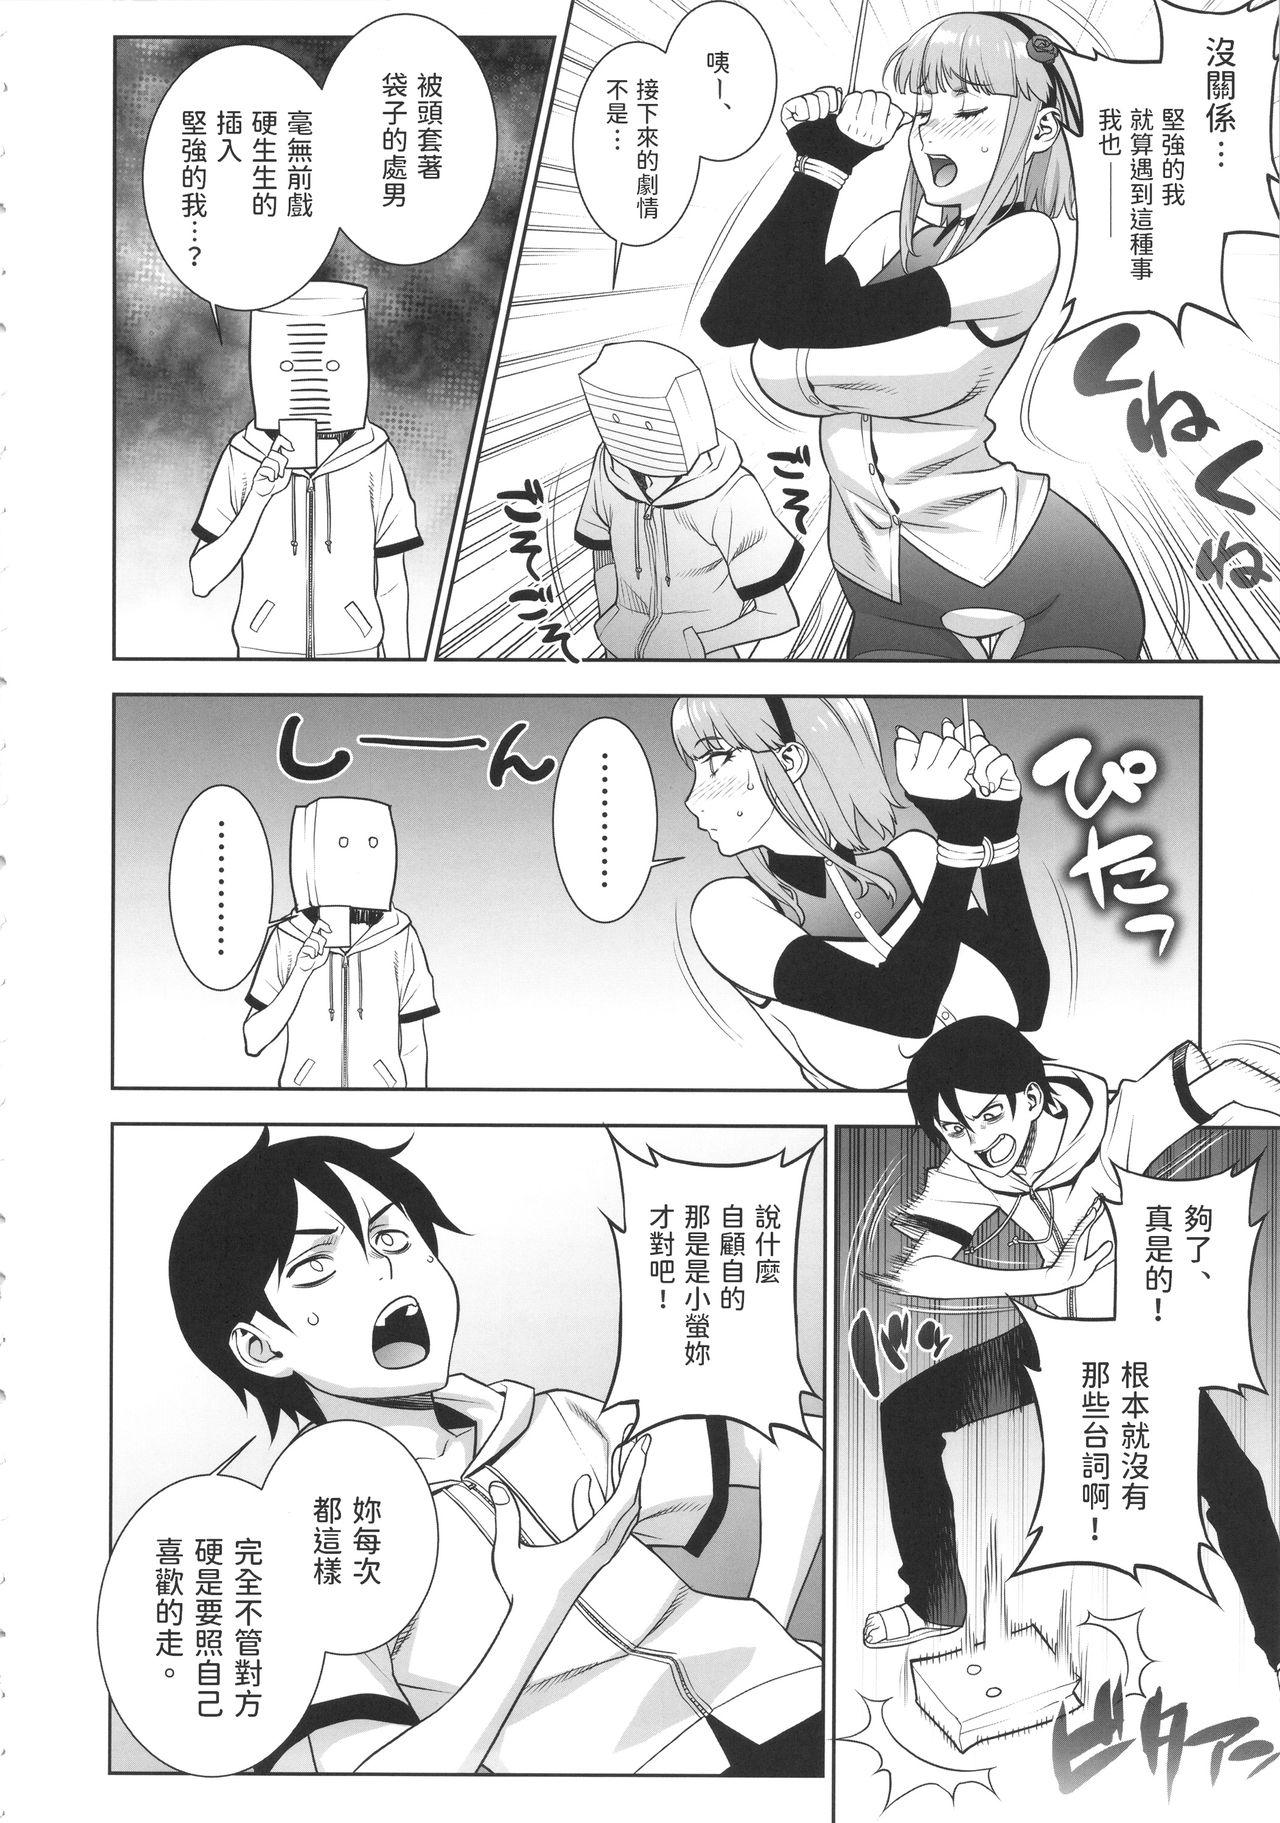 Naughty Himitsu Kichi no Himitsu - Dagashi kashi Gay Kissing - Page 11